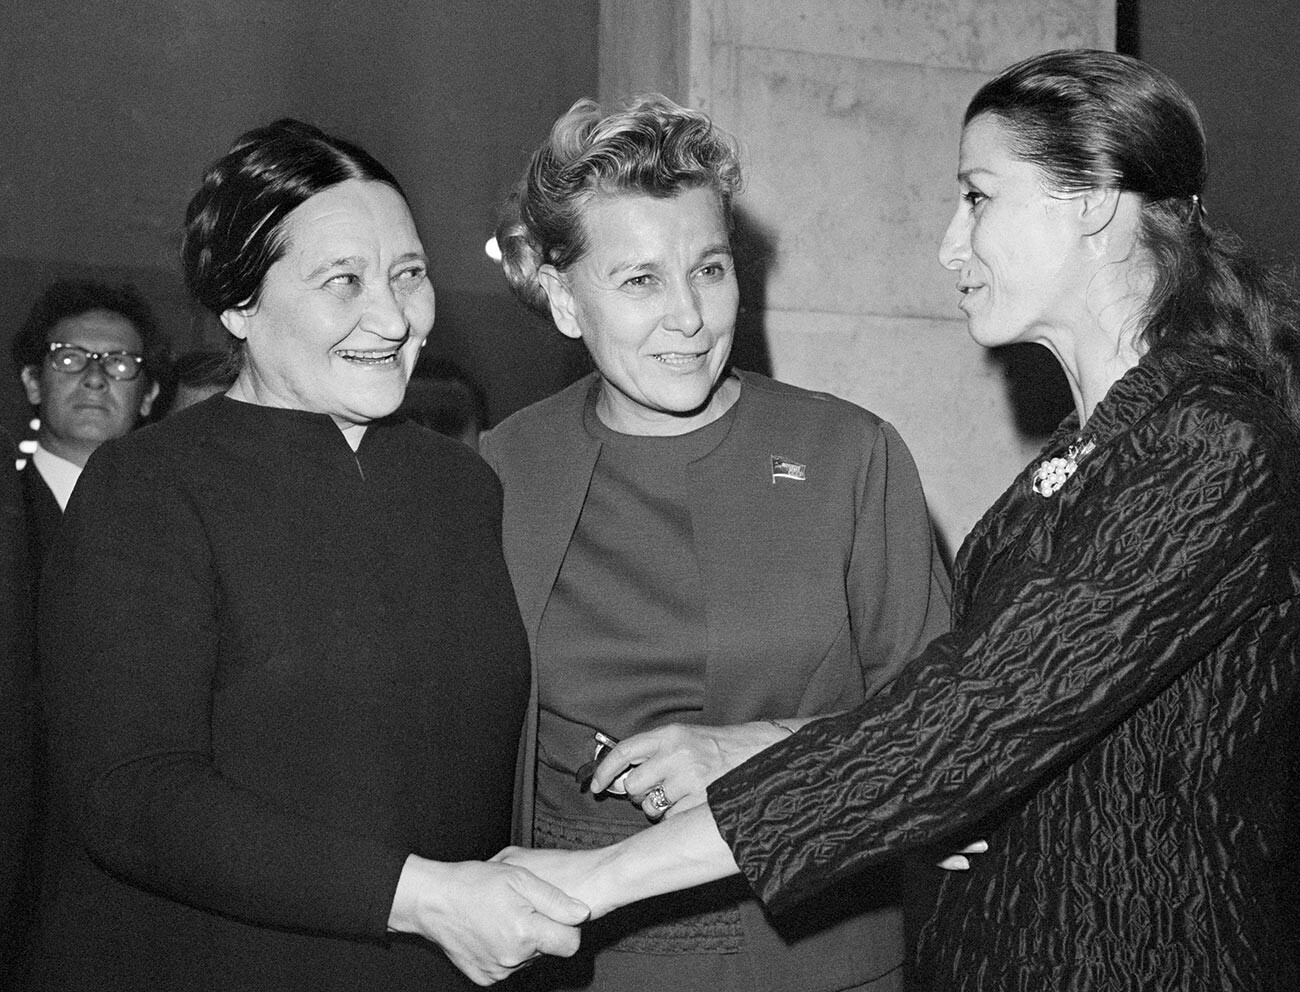 De gauche à droite : Nadia Léger, Ekaterina Fourtseva et Maïa Plissetskaïa, 1968